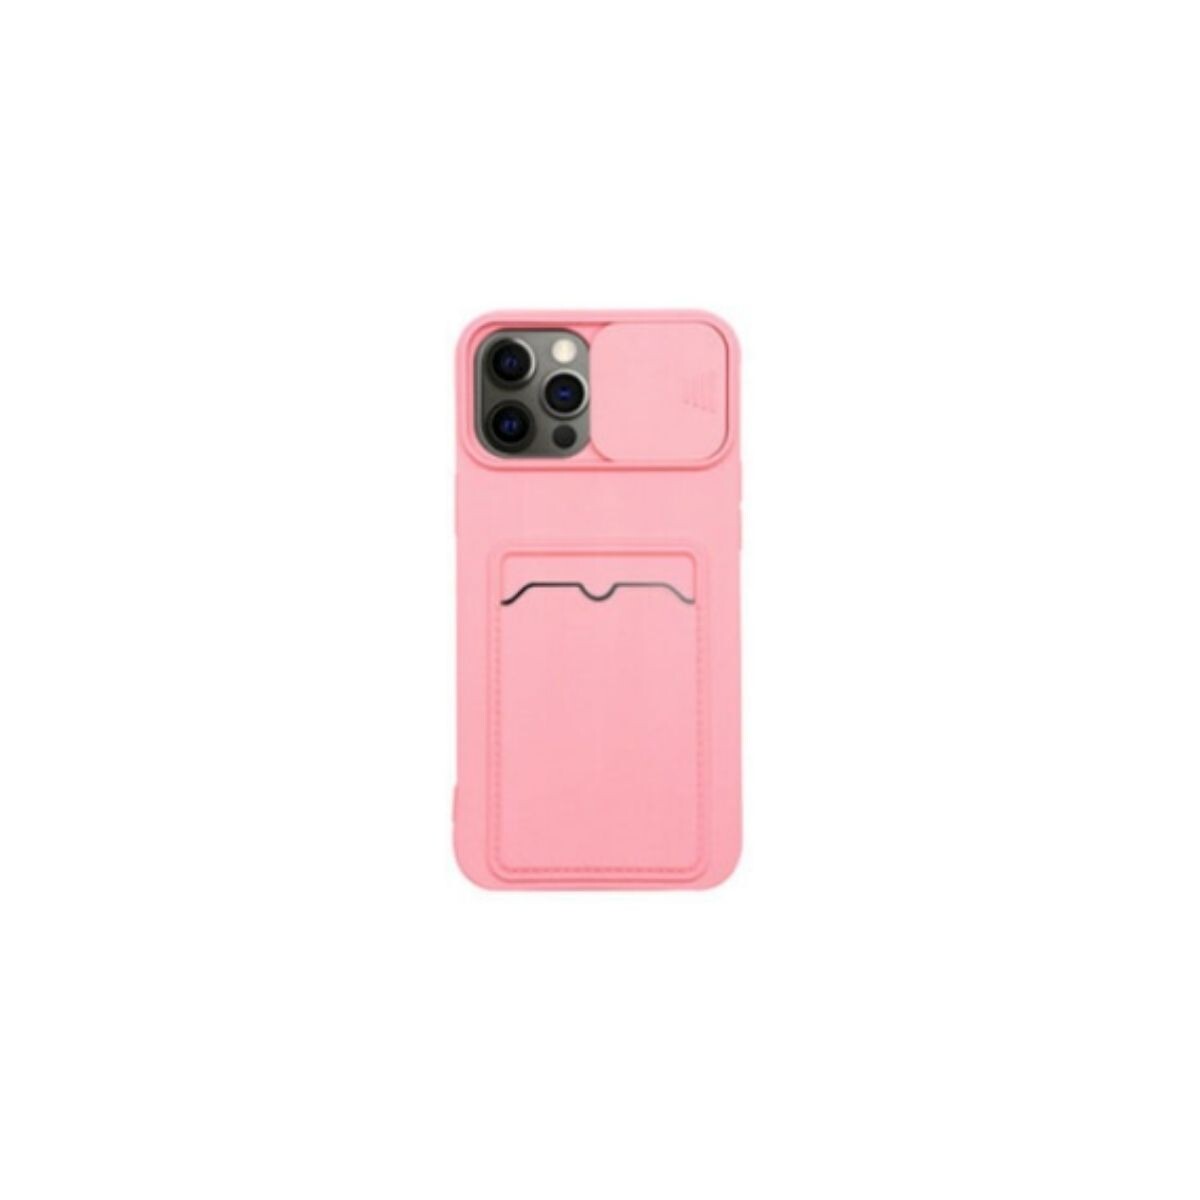 Protector cubre cámara para Iphone 12 rosa 